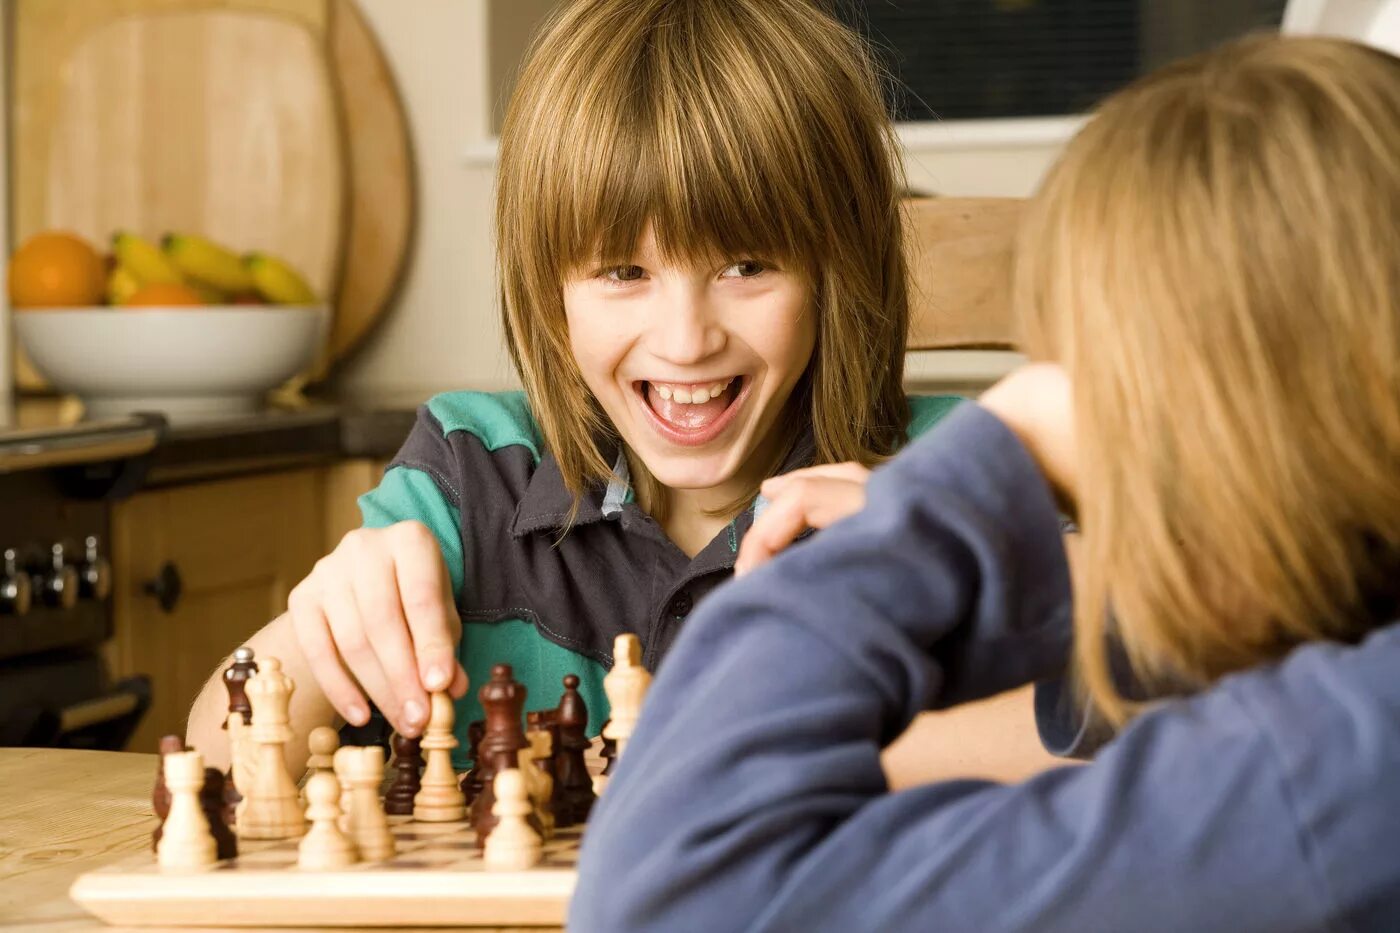 We like playing chess. Шахматы для детей. Игра в шахматы дети. Дети играющие в шахматы. Дети играют в настольные игры.